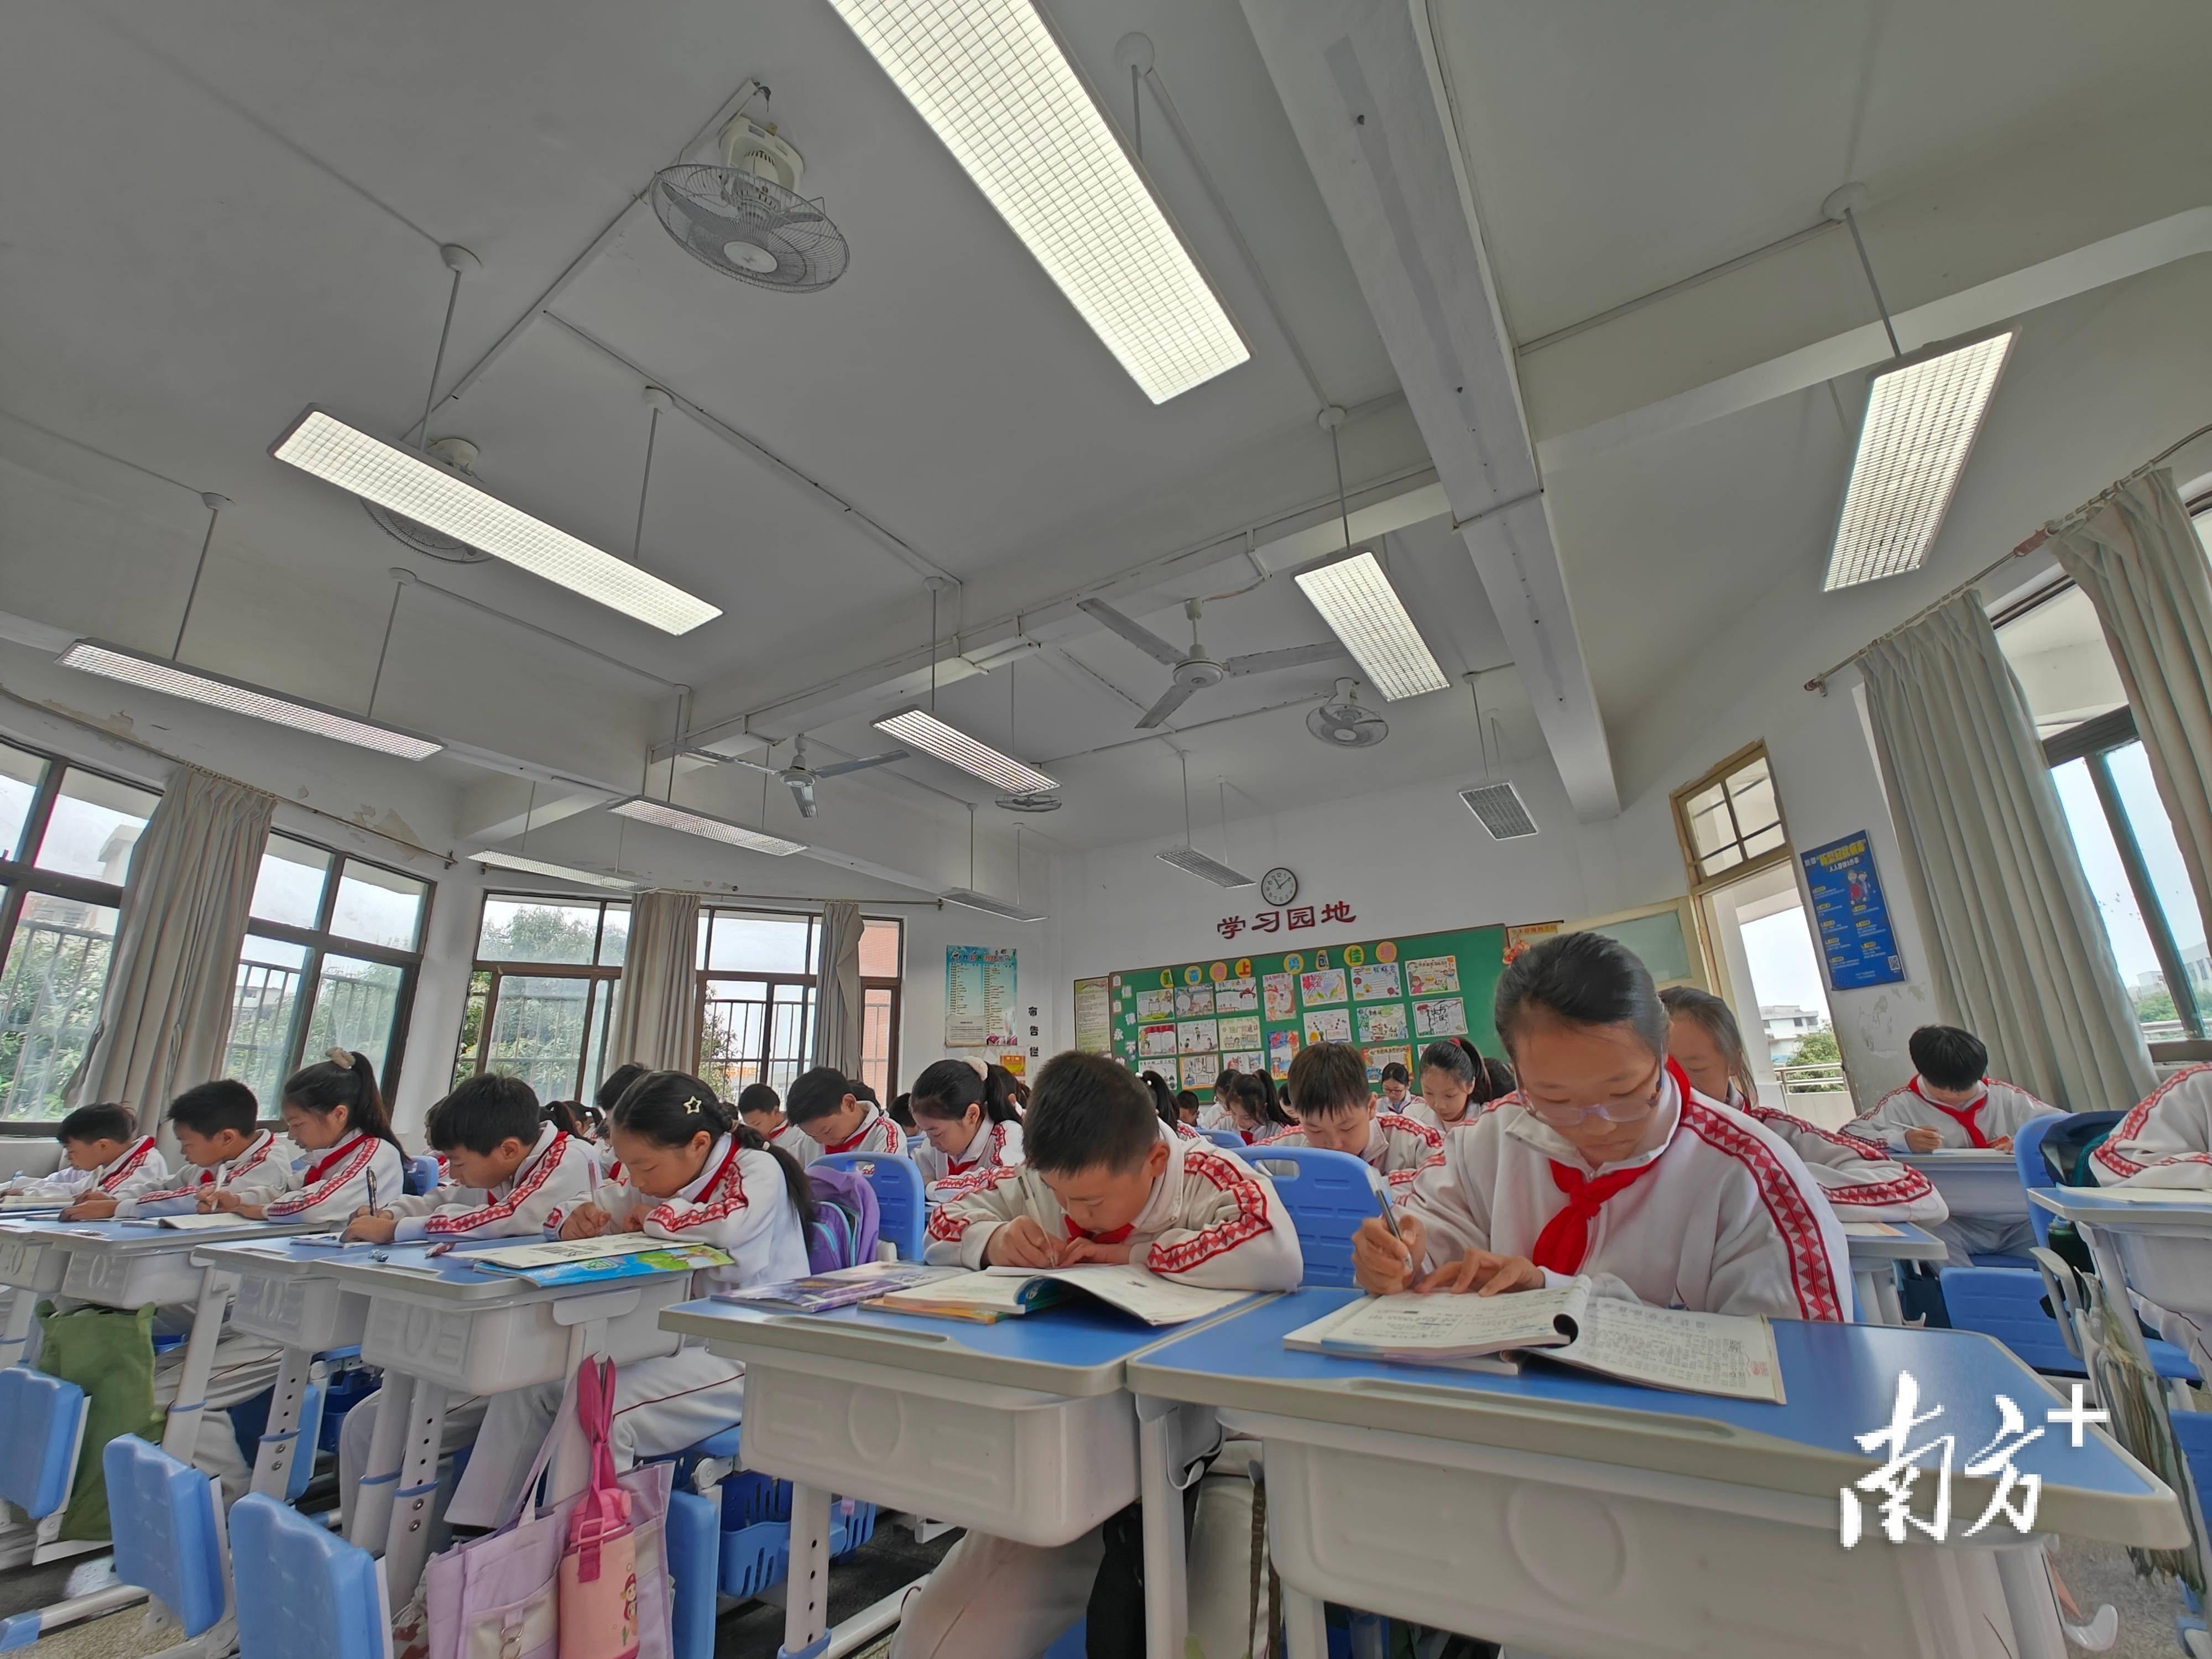 在饶平县华侨中学,总投资1762万元的学生宿舍楼及食堂项目顺利投入